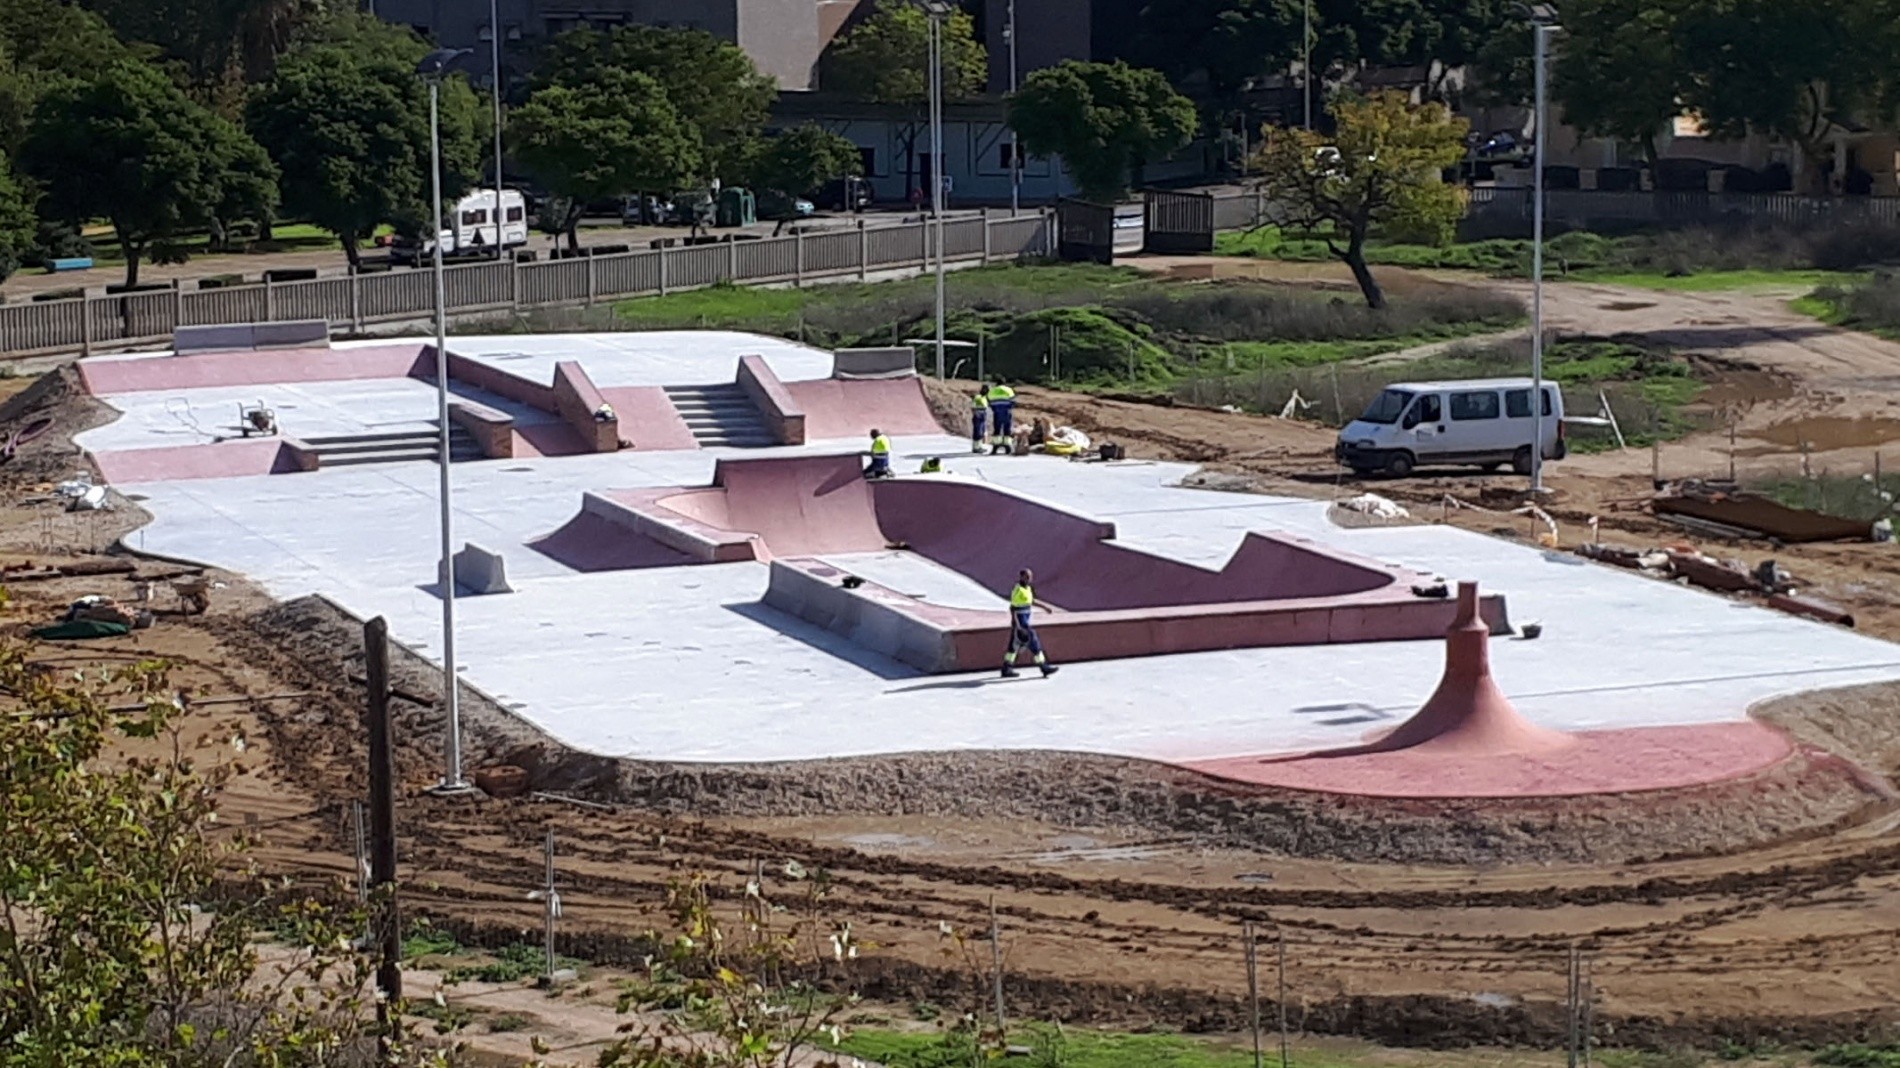 Jerez skatepark